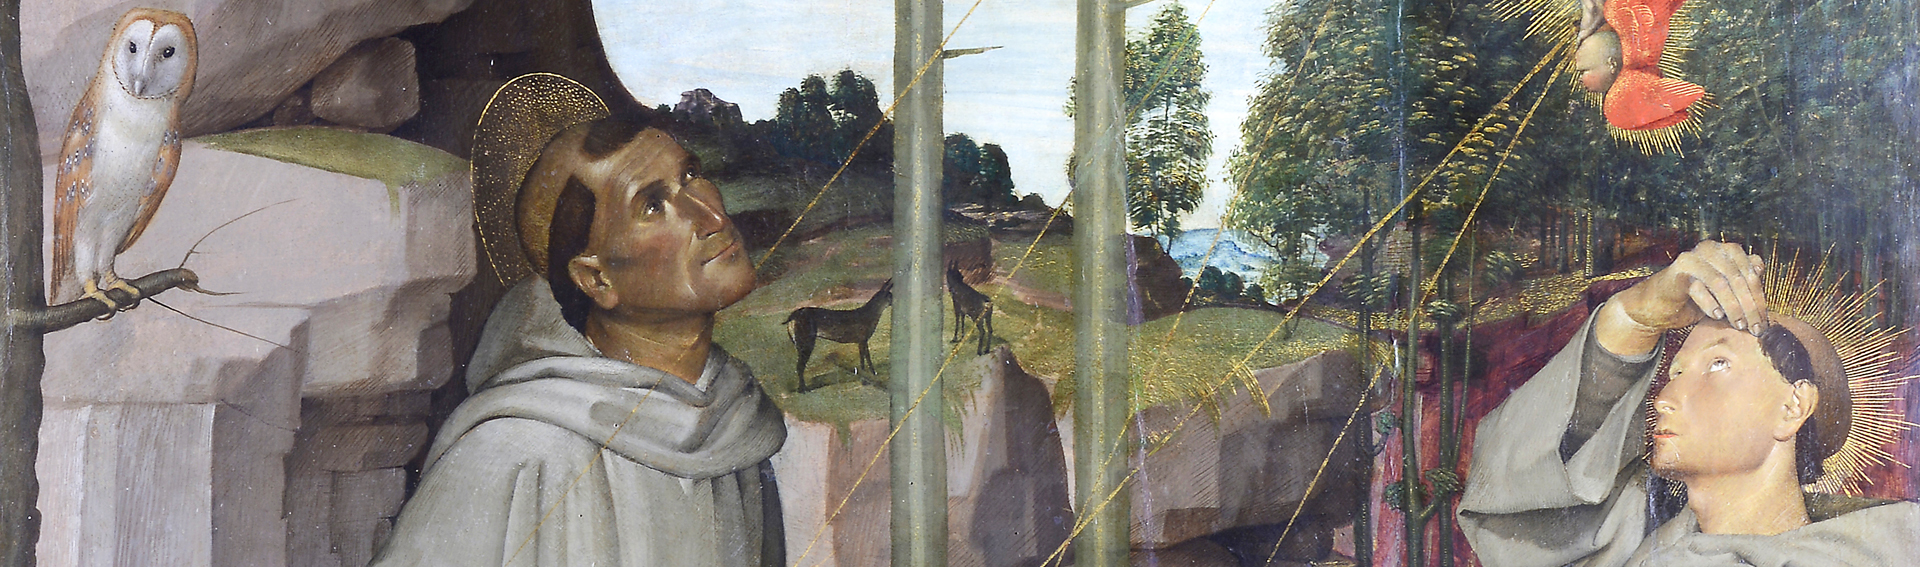 Saint Francis receives the stigmata - detail